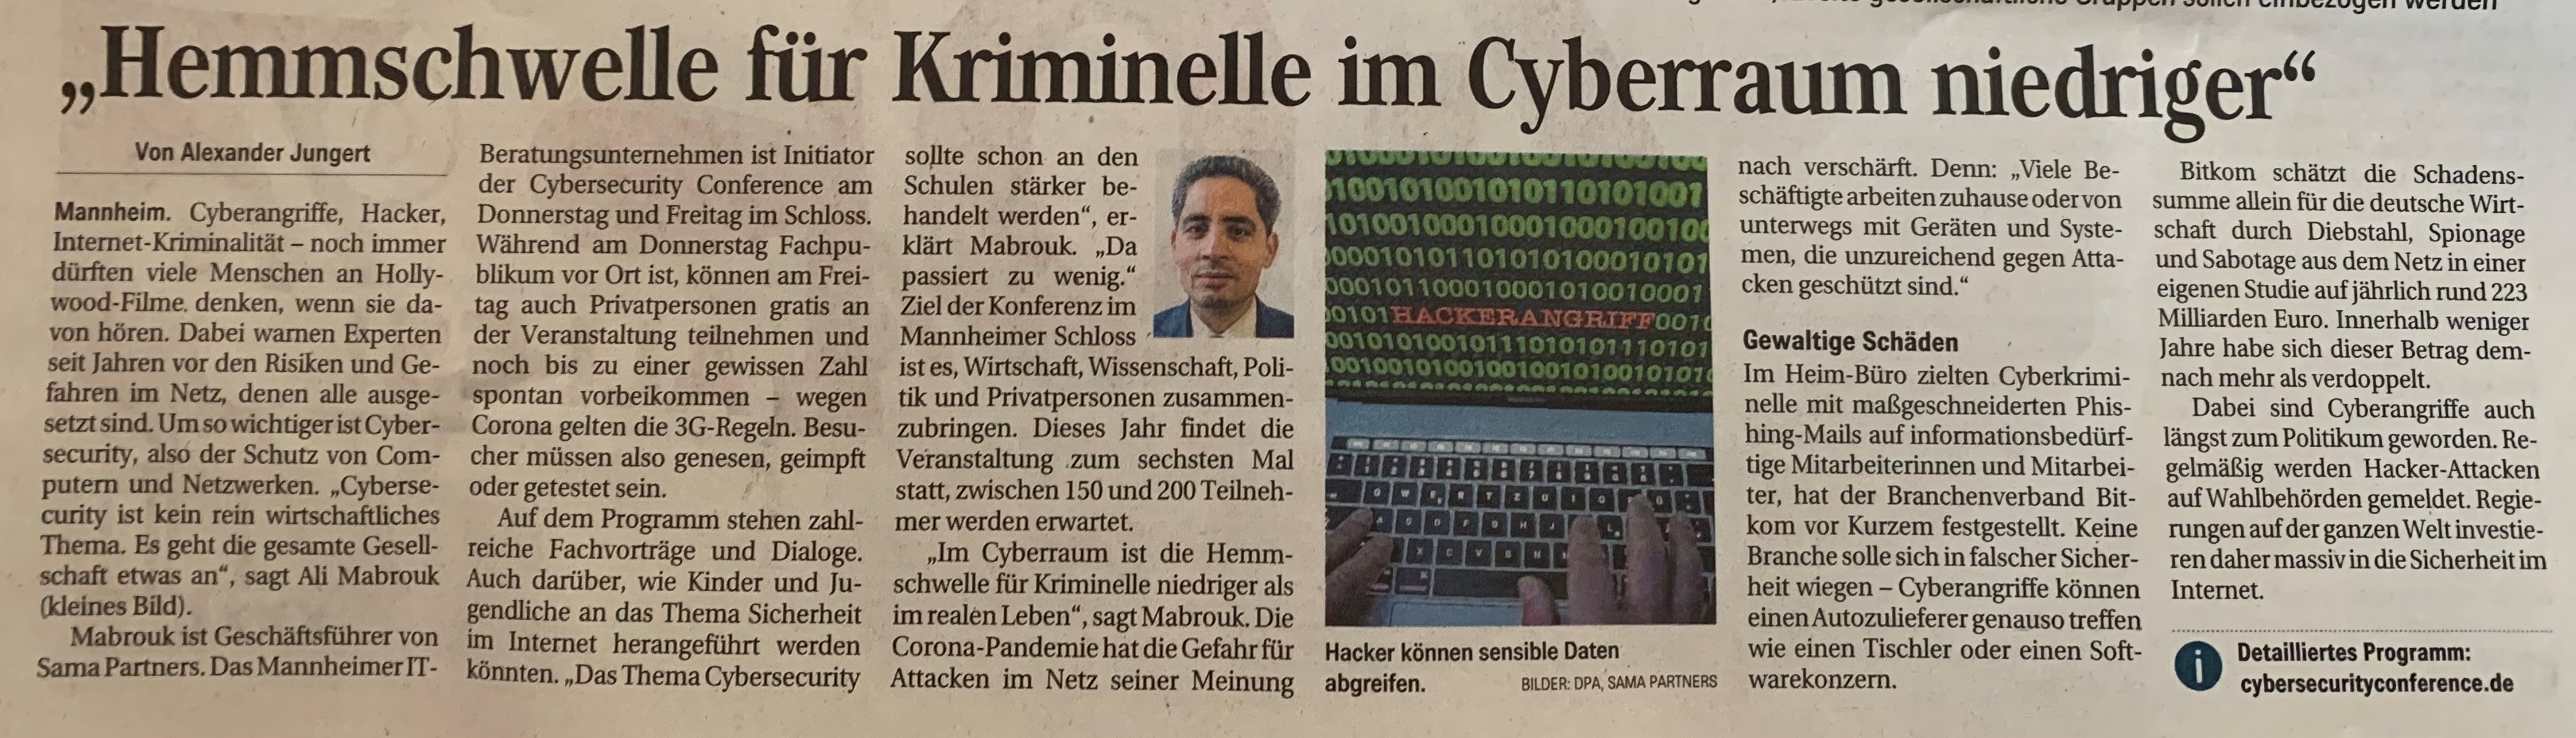 Artikel "Hemmschwelle für Kriminelle im Cyberraum geringer"